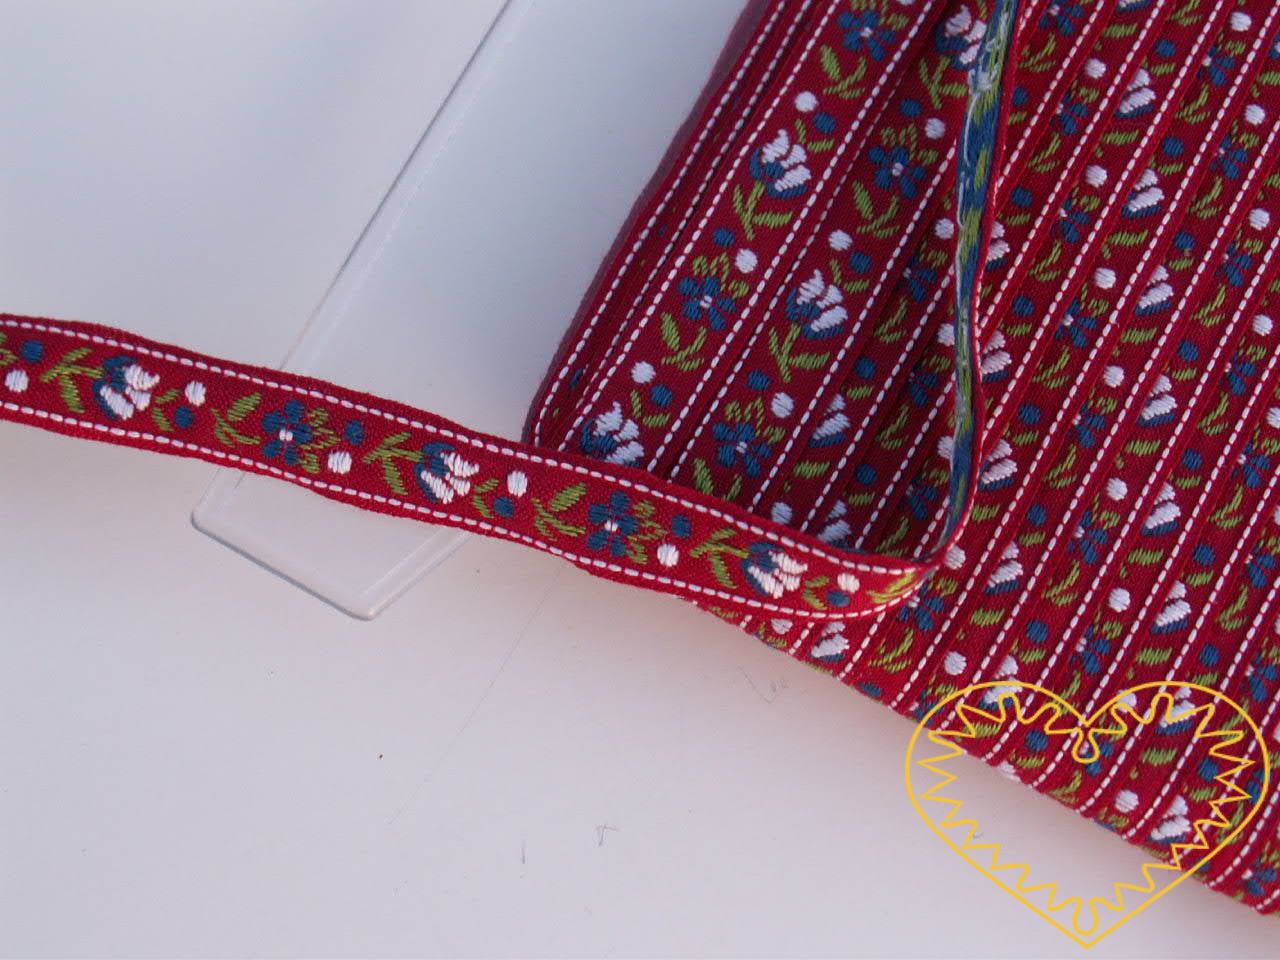 Úzká červená krojová stuha se vzorem - vzorovka - šíře 1 cm. Textilní tkaná stuha s jemným vzorkem je vhodná zvláště při výrobě krojů a předmětů tradiční lidové kultury. Vhodná též k lemování tkanin a šatů panenek a maňásků.